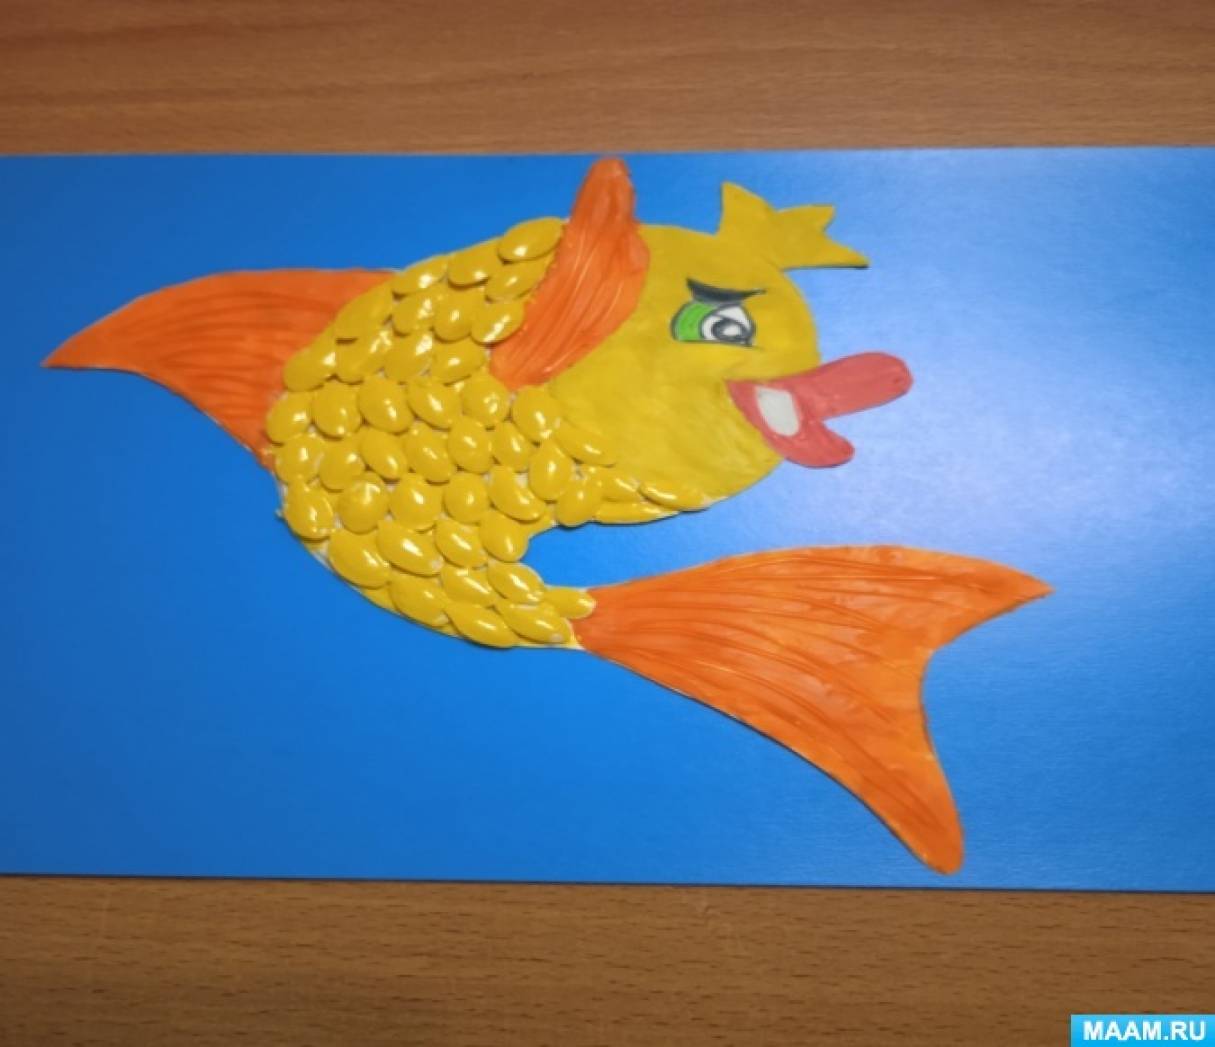 Мастер-класс по ручному труду «Золотая рыбка» по сказке А. С. Пушкина «Сказка о рыбаке и рыбке»